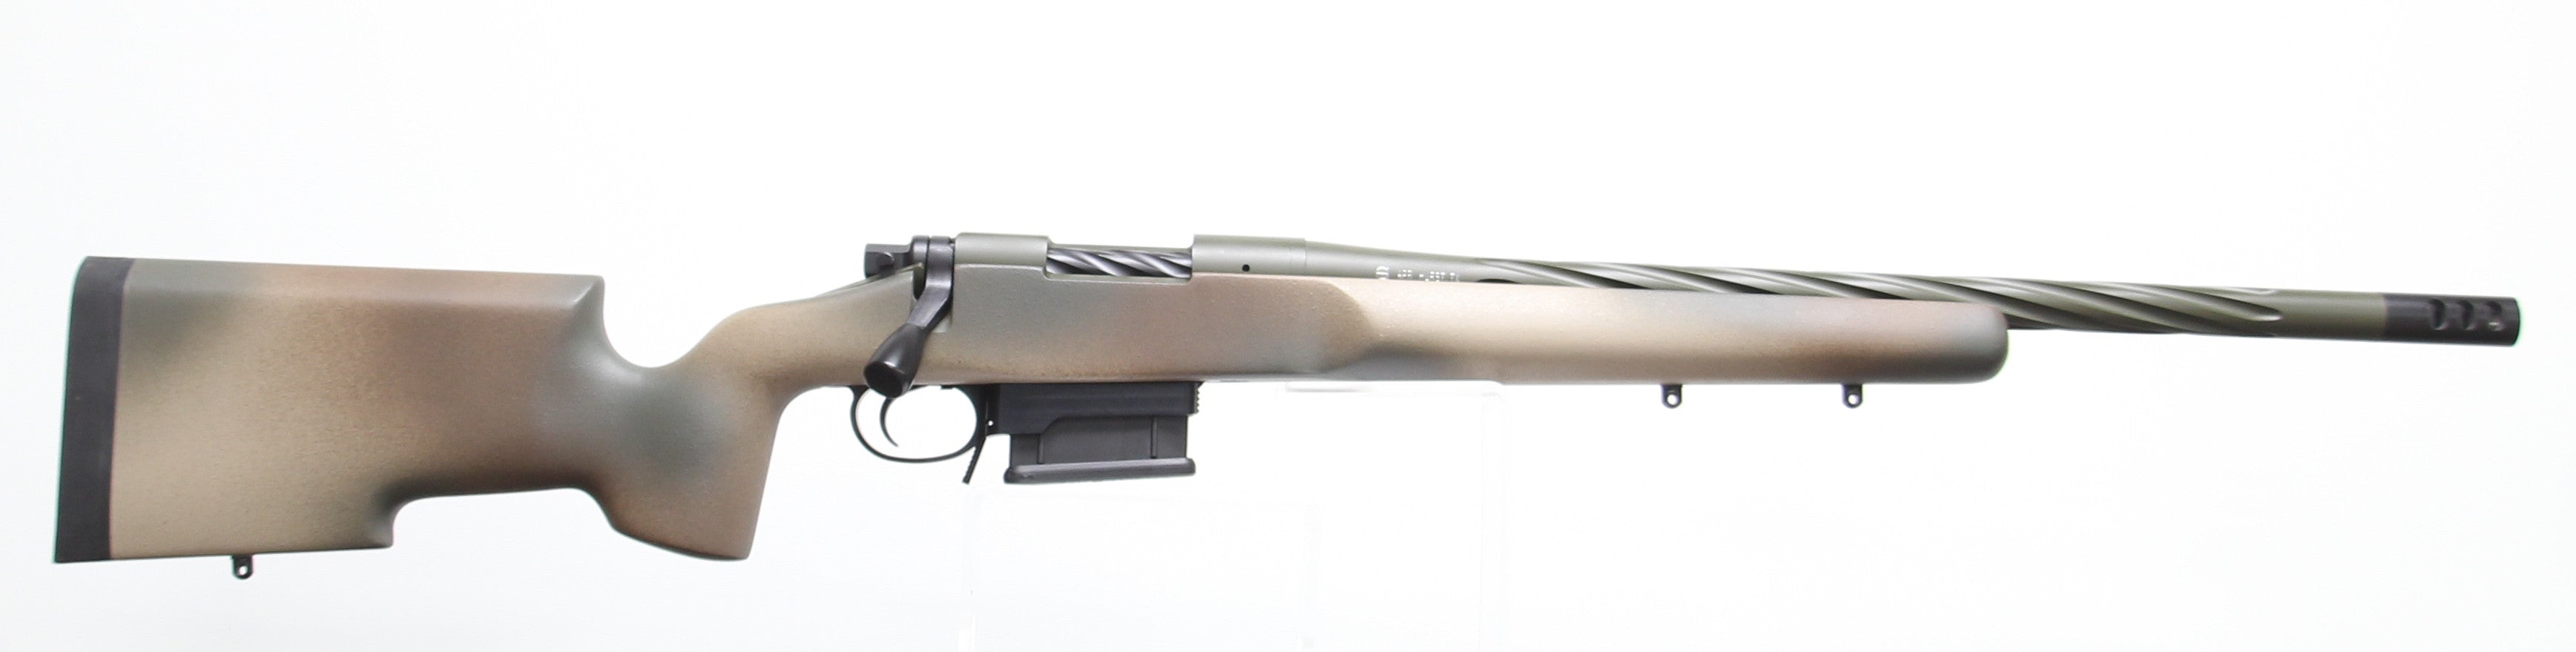 Ranger 308 Winchester